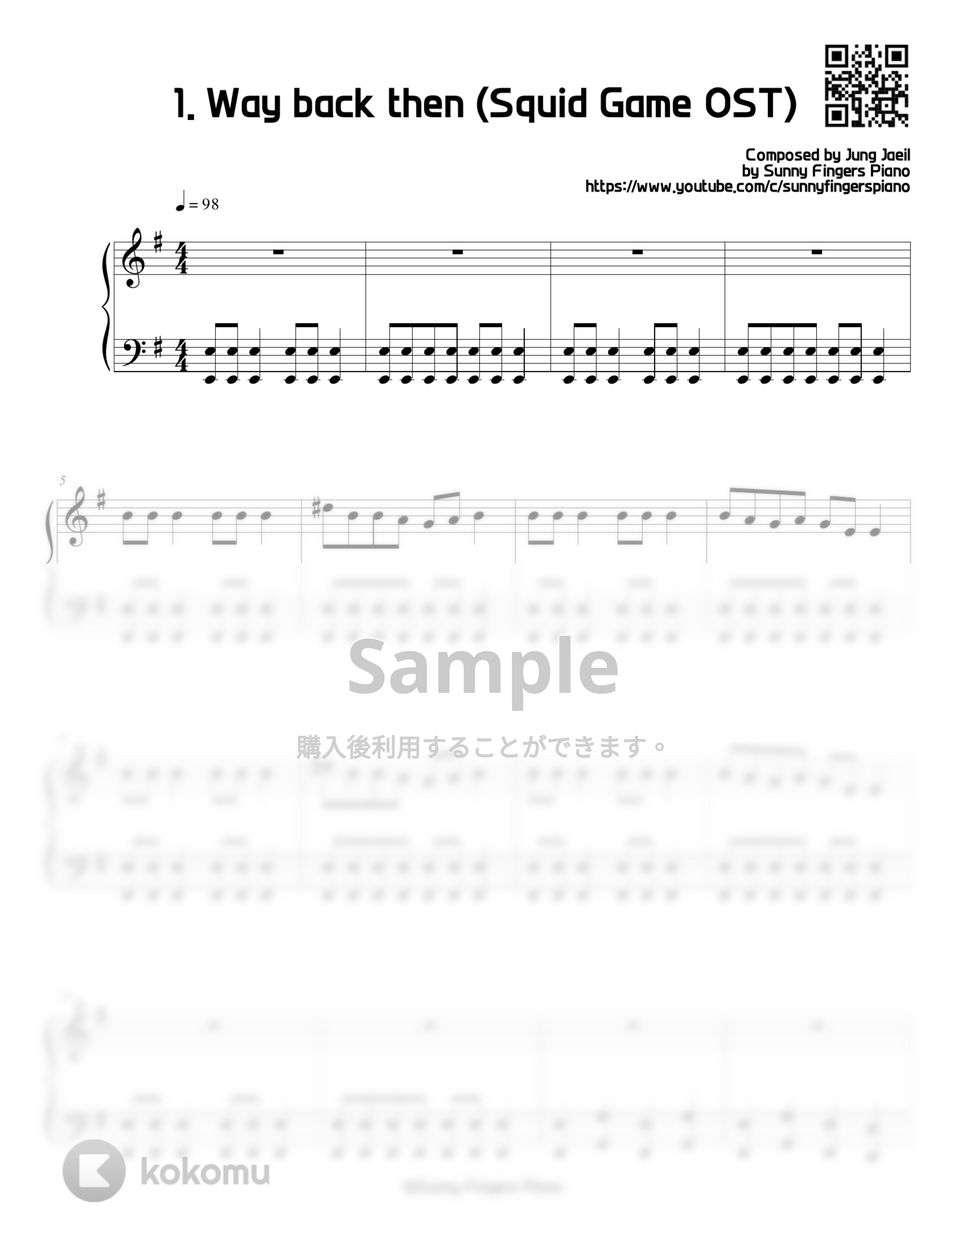 イカゲーム OST / BGM - episode.1 opening & ending 1. Way back then (Series) by Sunny Fingers Piano